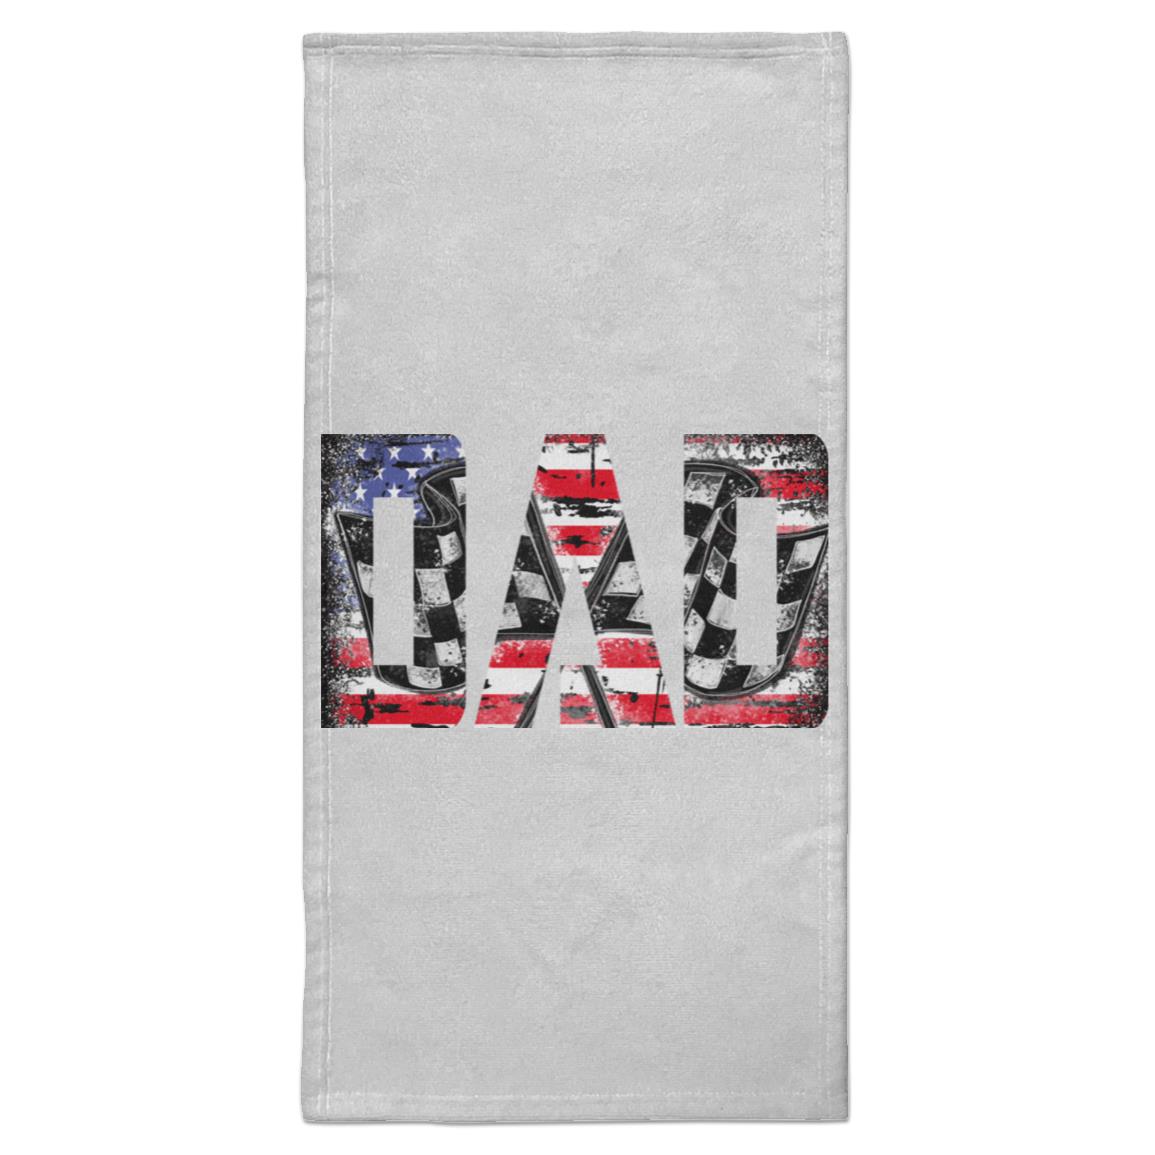 USA Racing Dad Towel - 15x30